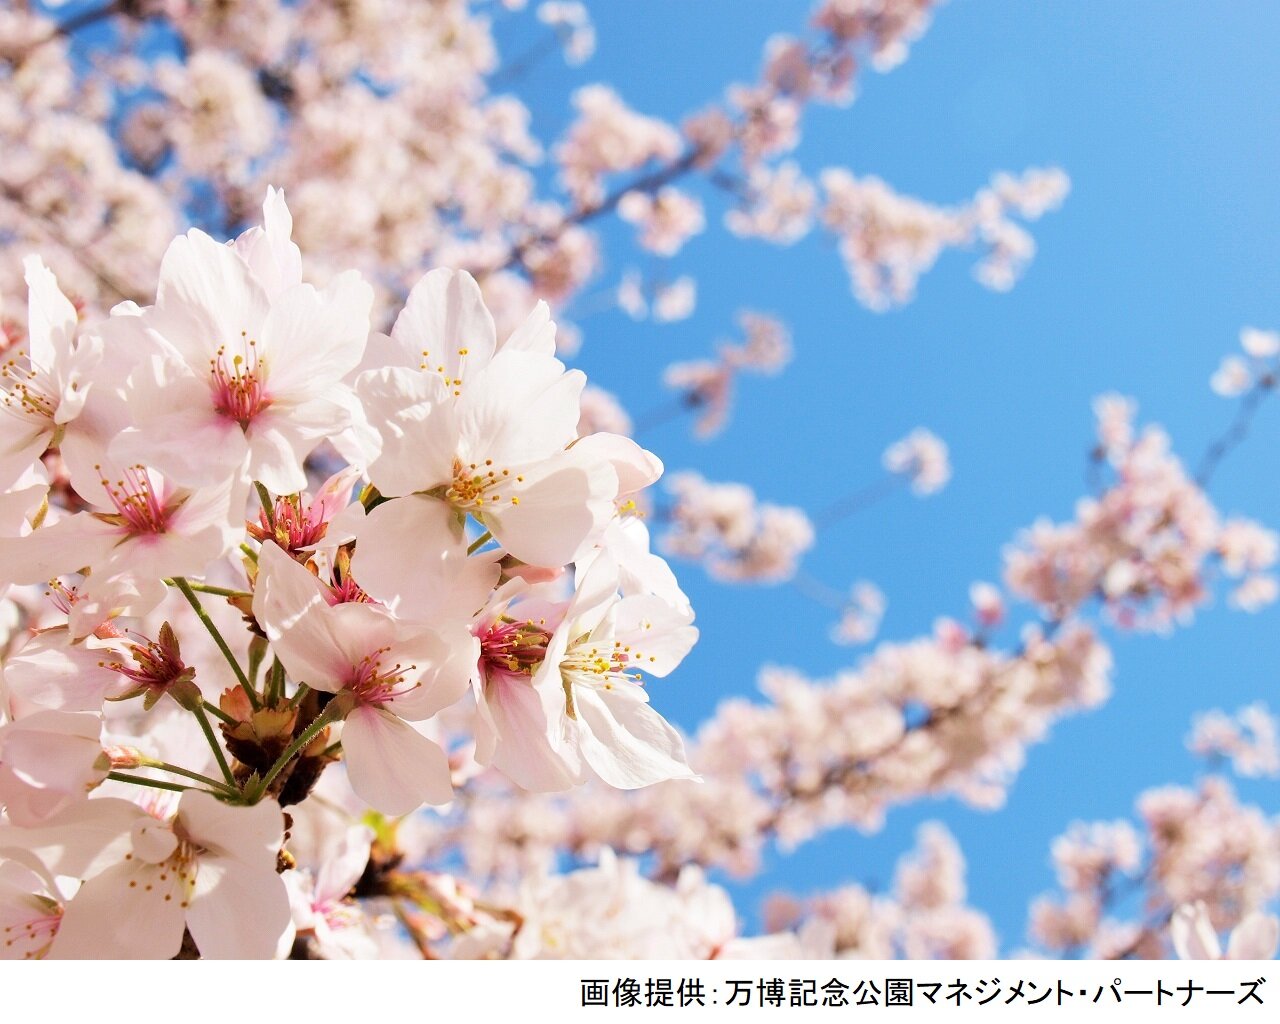 万博記念公園 桜まつり イベント Osaka Info